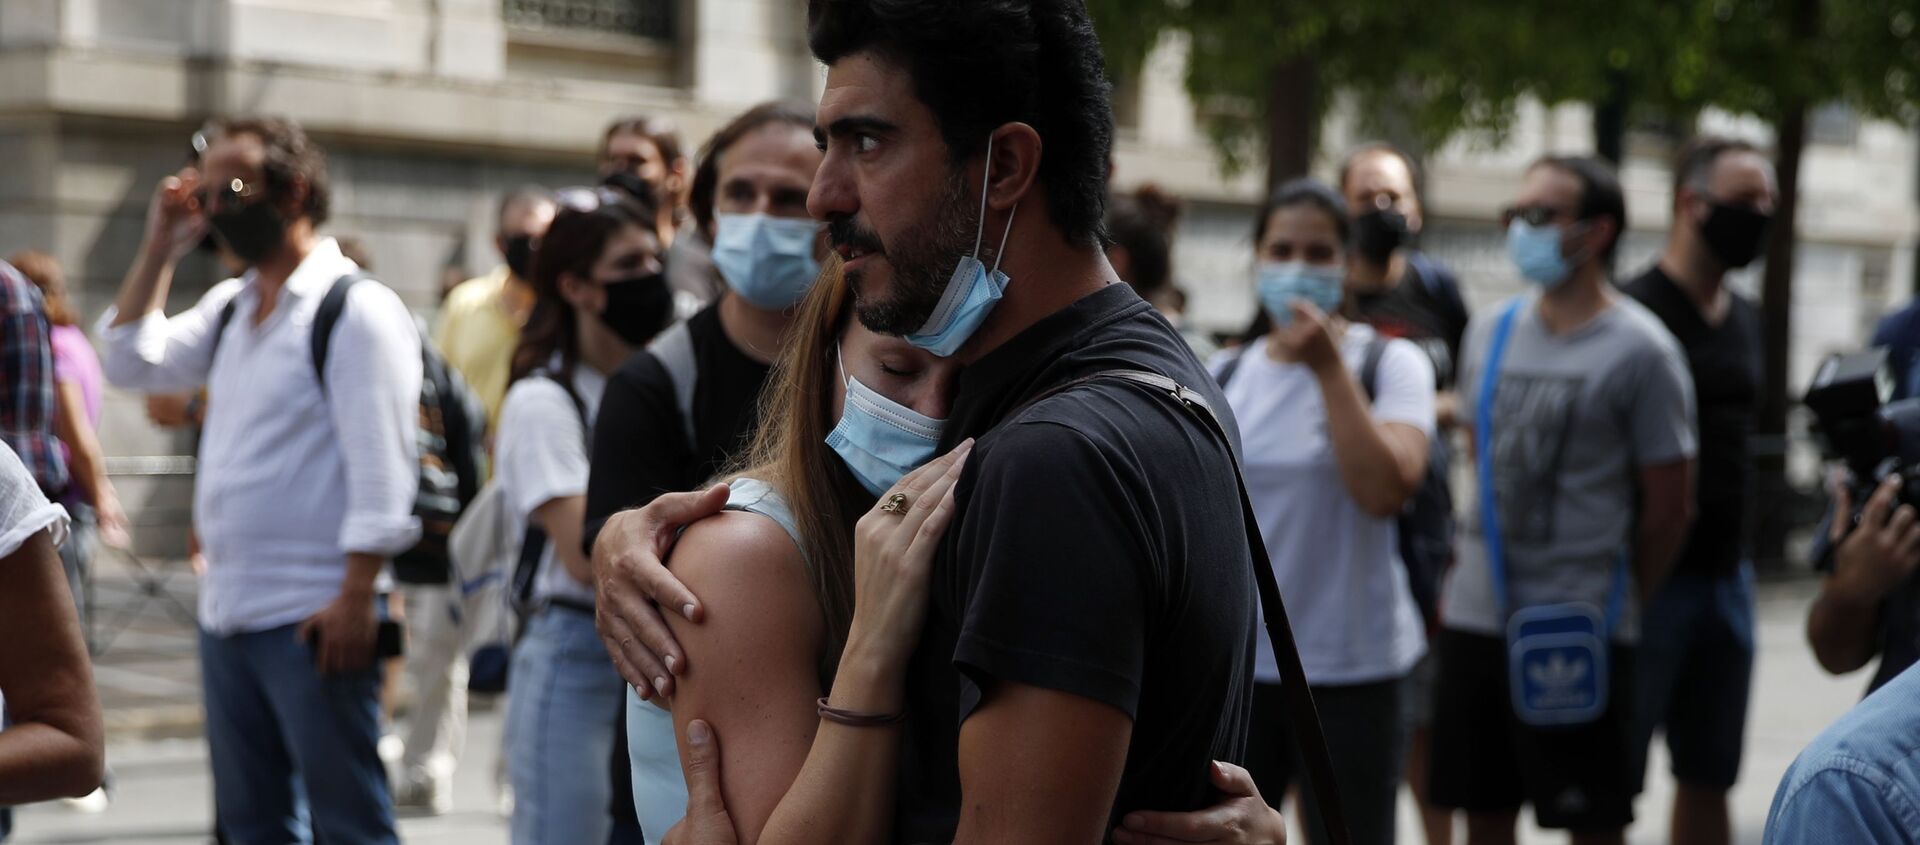 Девушка и ее бойфренд в масках слушают уличных артистов в Афинах, Греция, во время пандемии коронавируса COVID 19 - Sputnik Грузия, 1920, 26.06.2021